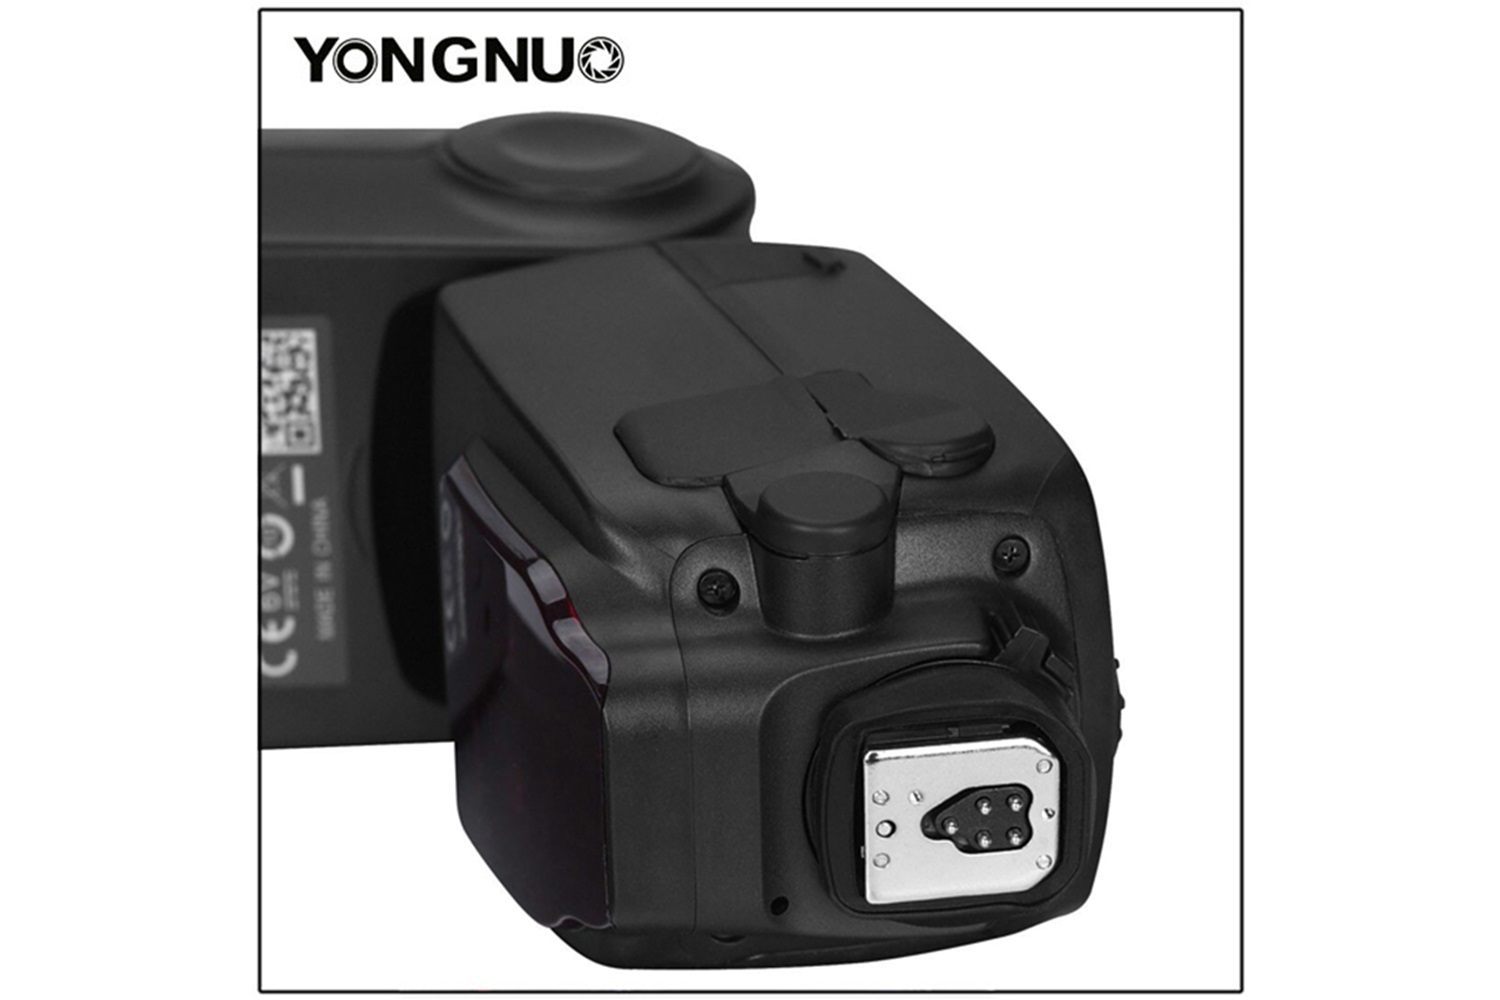 Yongnuo YN685-II C Dahili Alıcılı Canon Uyumlu HSS TTL Tepe Flaşı